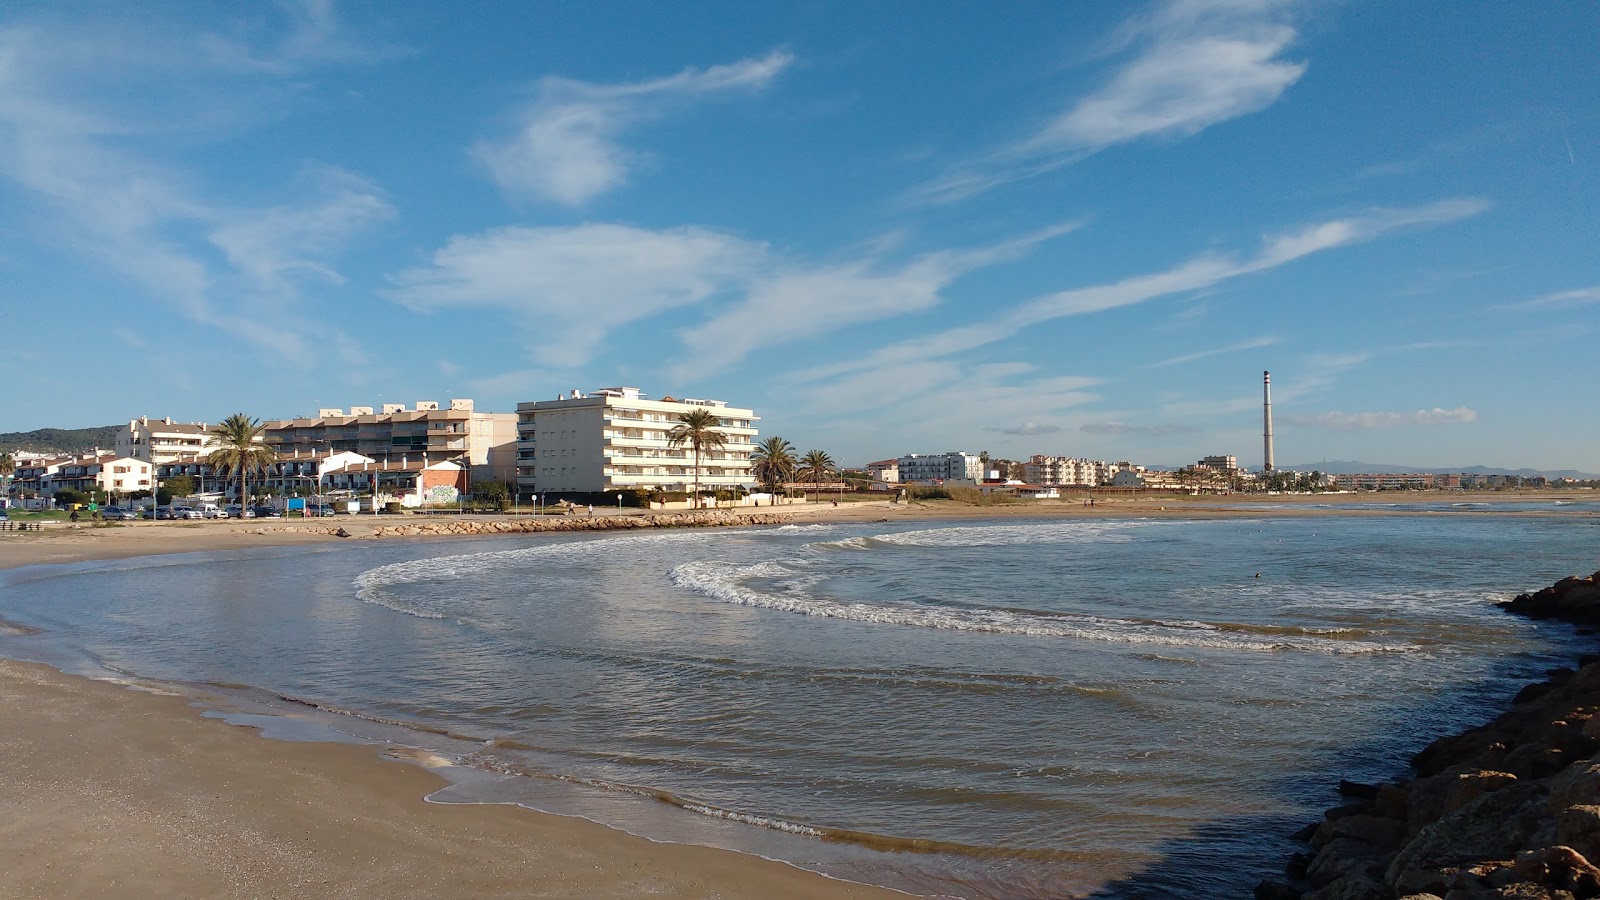 Playa de Cunit'in fotoğrafı büyük koylar ile birlikte